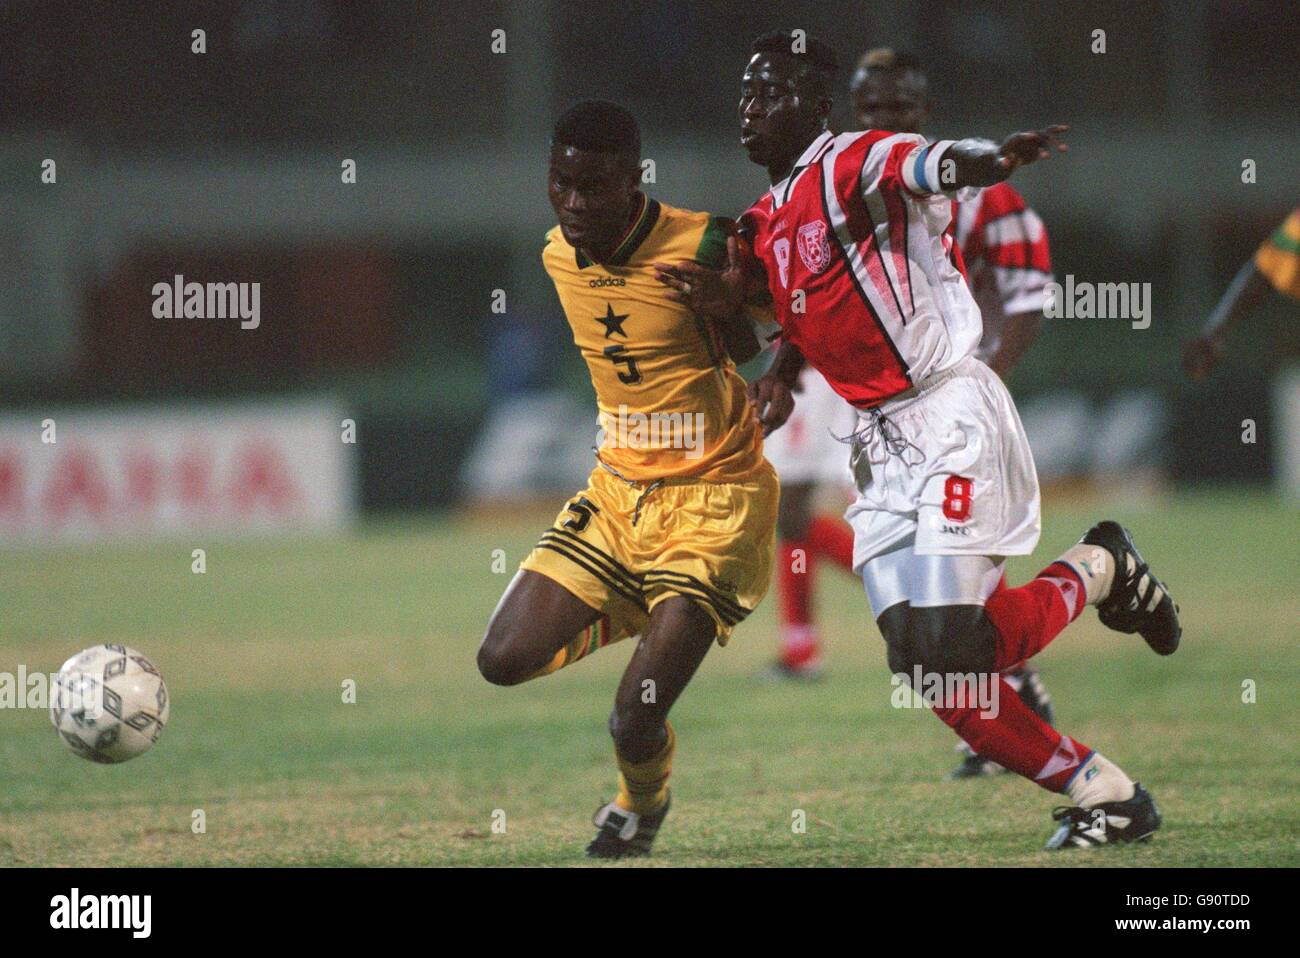 Fußball - African Nations Cup - Ghana / Togo. Eric Pappoe Addo aus Ghana (links) und Ouadja Lantame aus Togo (rechts) kämpfen um den Ball Stockfoto